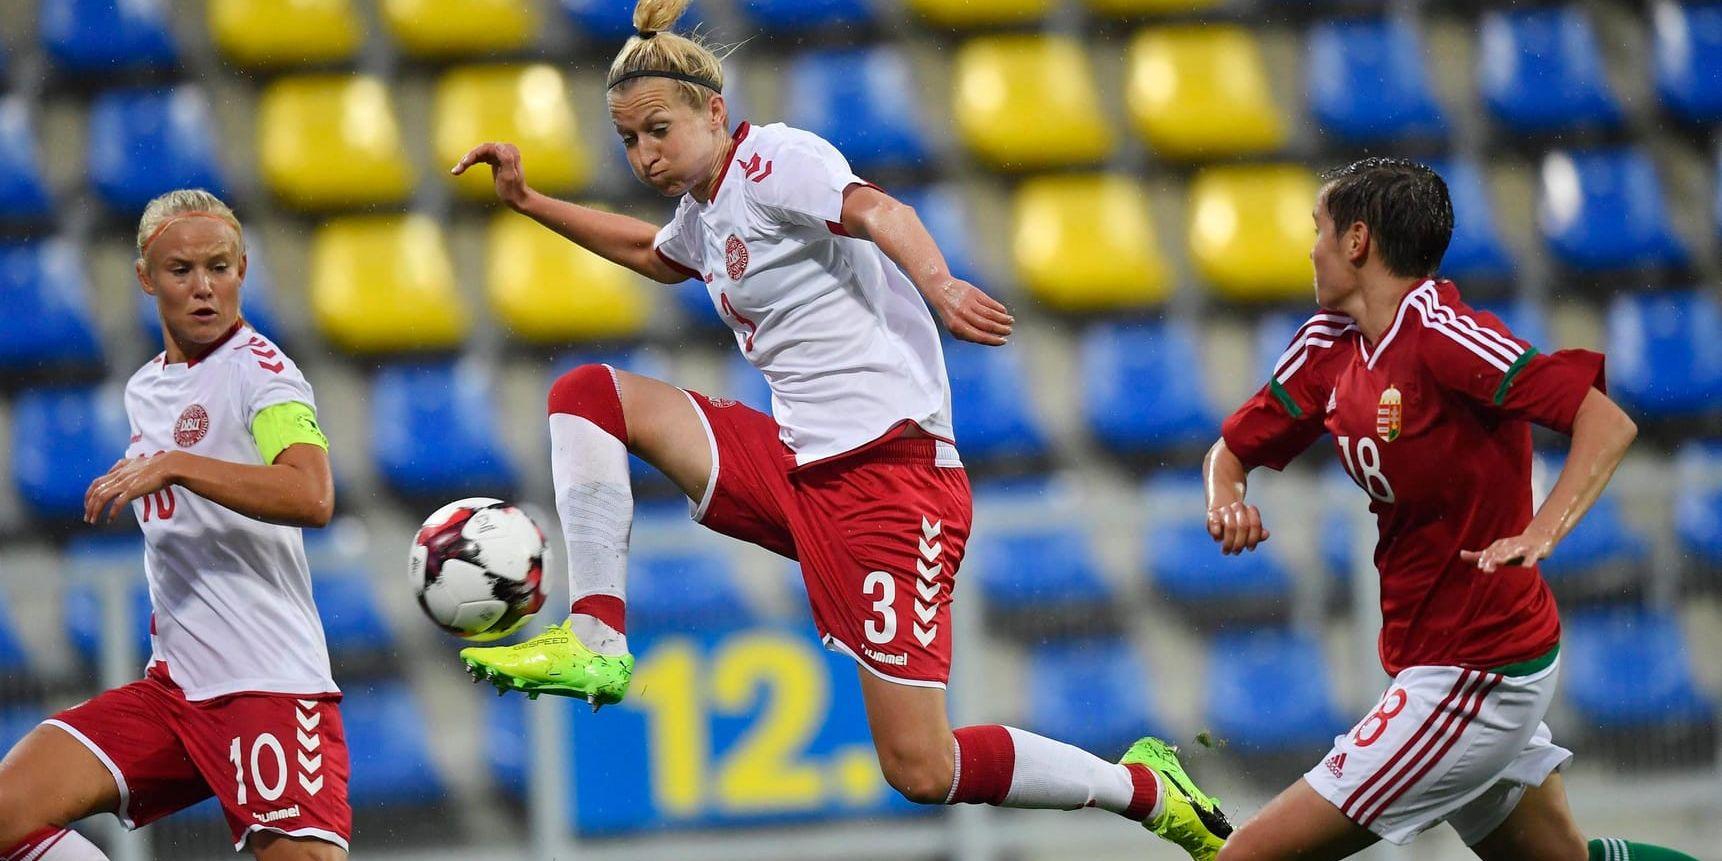 Pernille Harder och Janni Arnth i Danmarks VM-kvalmatch mot Ungern i september, som spelades med ett tillfälligt kollektivavtal för det danska landslaget. Nu återstår att se om Danmark kommer till fredagens VM-kval mot Sverige i Göteborg.